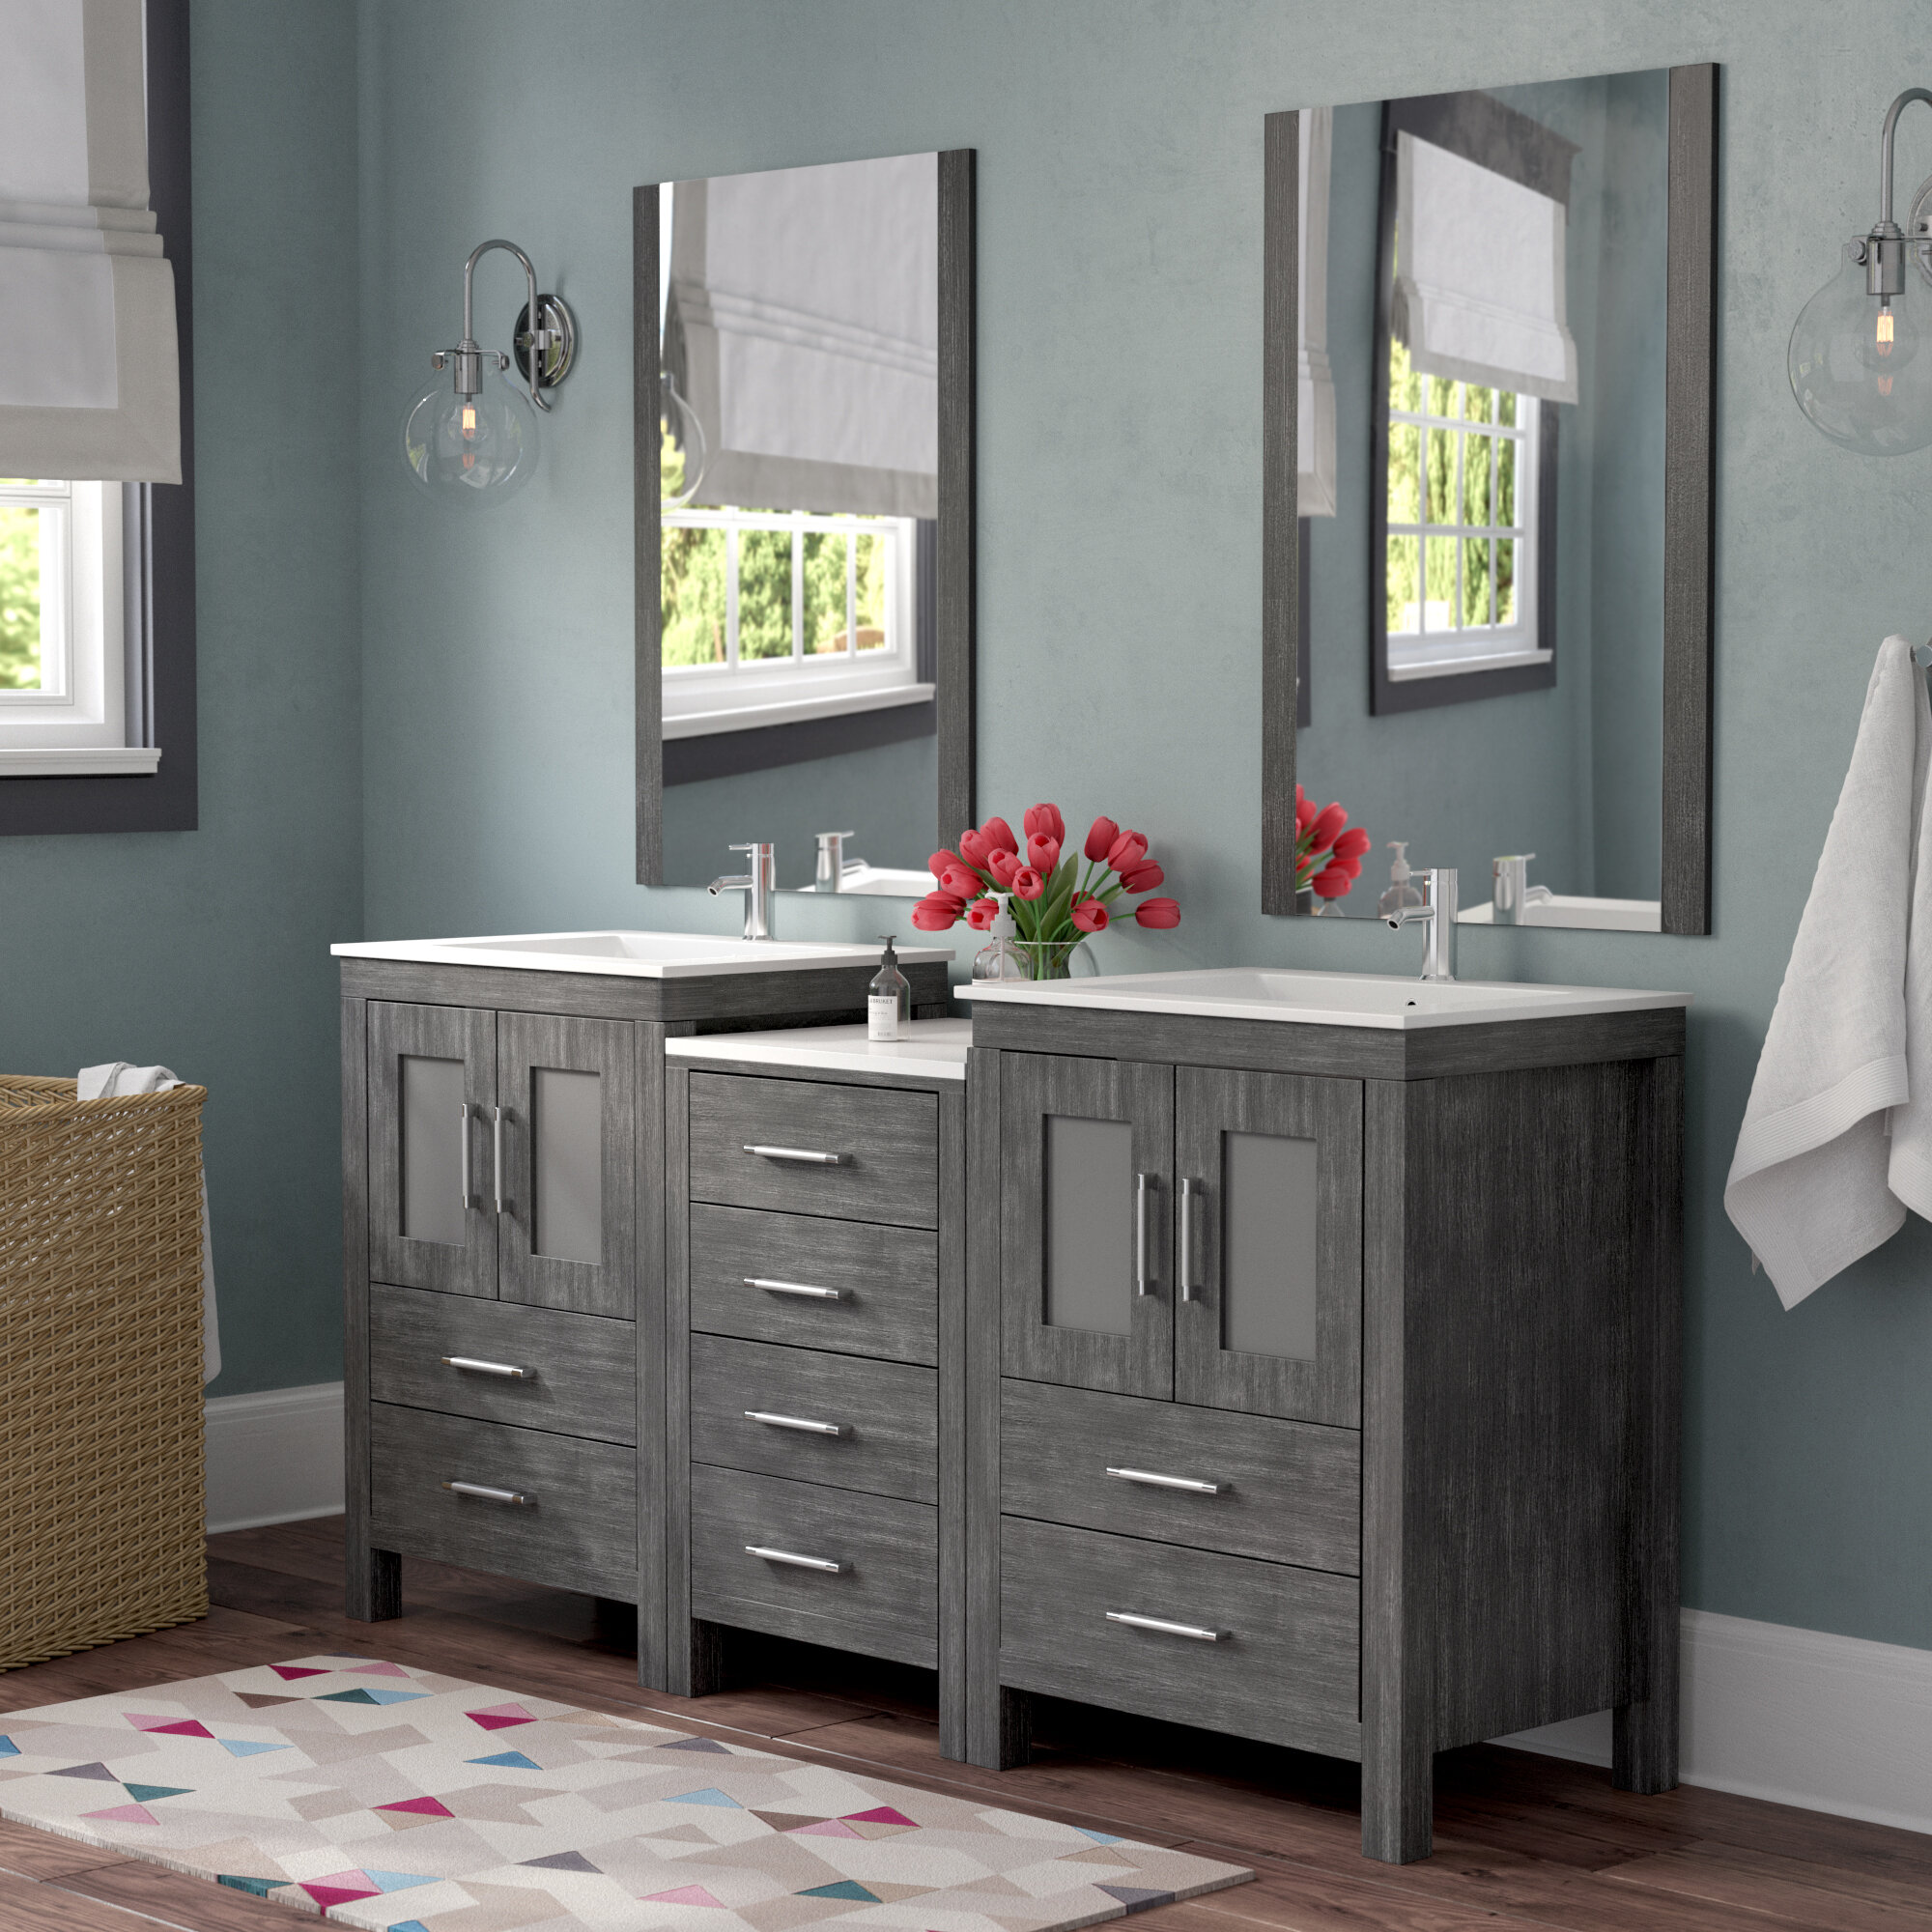 Brayden Studio Stanardsville 66 Double Bathroom Vanity Set With Mirror Reviews Wayfair